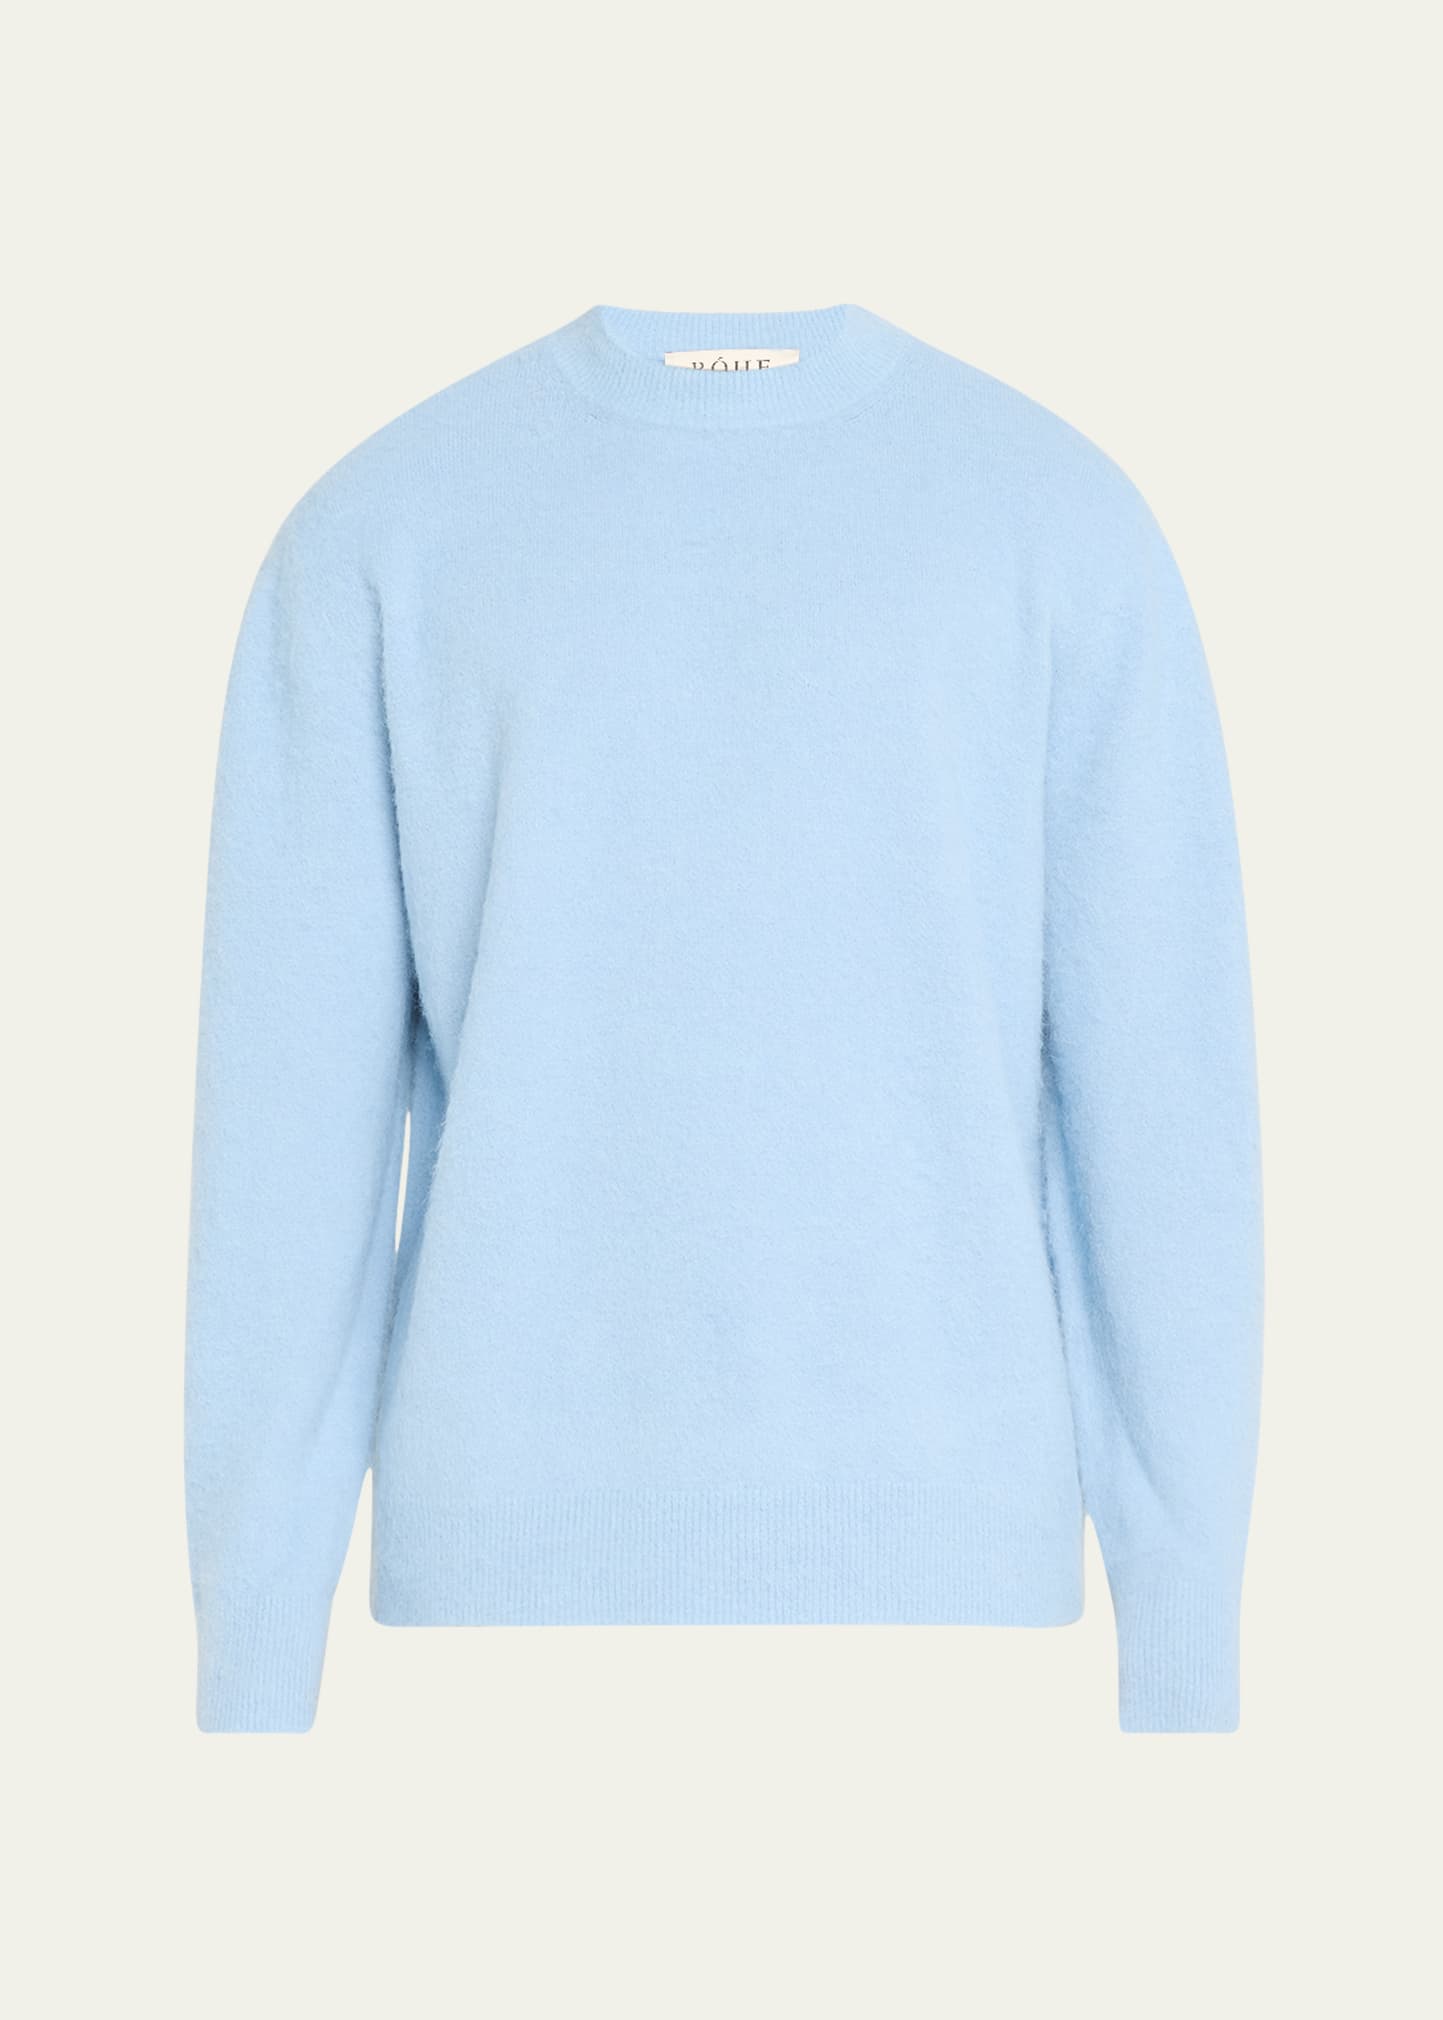 Men's Fuzzy Wool-Blend Sweater